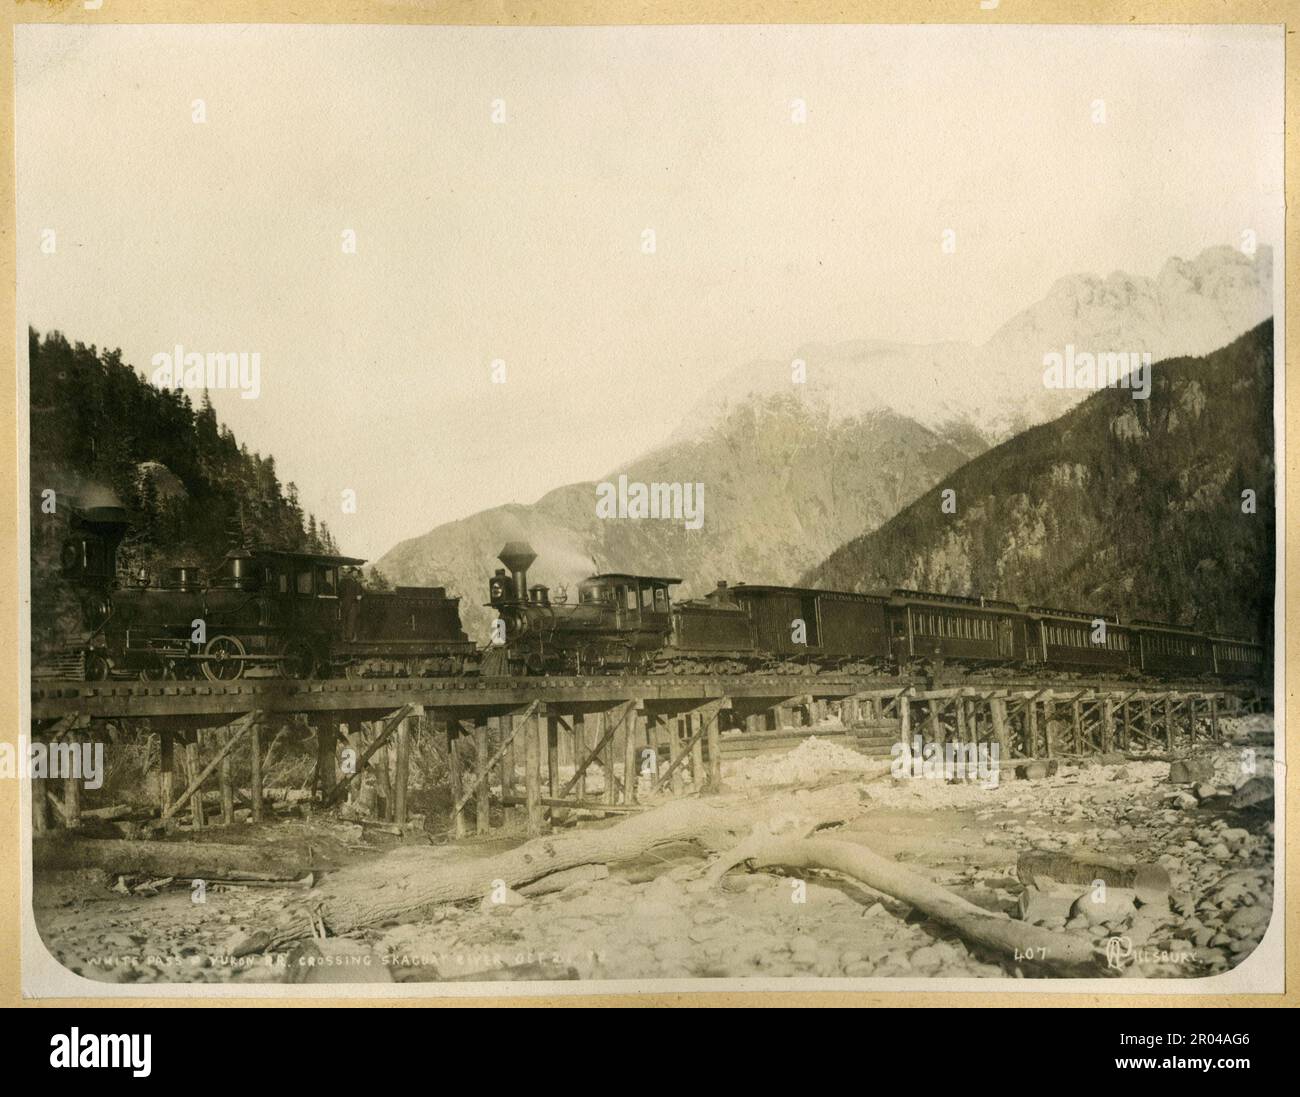 White Pass und Yukon Railway, die den Skagway River überqueren, 21. Oktober 1898. Während des Klondike-Goldrauschs war der White Pass eine der Routen, die von Goldsuchern genutzt wurden, um von Skagway zu den Yukon-Goldfeldern zu reisen. Im April 1898 wurde die White Pass and Yukon Railroad Company gegründet, um einen einfacheren Weg durch den Pass zu finden. Die Bauarbeiten an der Eisenbahn begannen im folgenden Monat. Tausende von Arbeitern arbeiteten rund um die Uhr unter betrügerischen Bedingungen, um das Projekt abzuschließen. Die Eisenbahnstrecke wurde am White Pass am 20. Februar 1899 fertiggestellt und erreichte Lake Bennett am 6. Juli 1899. Stockfoto